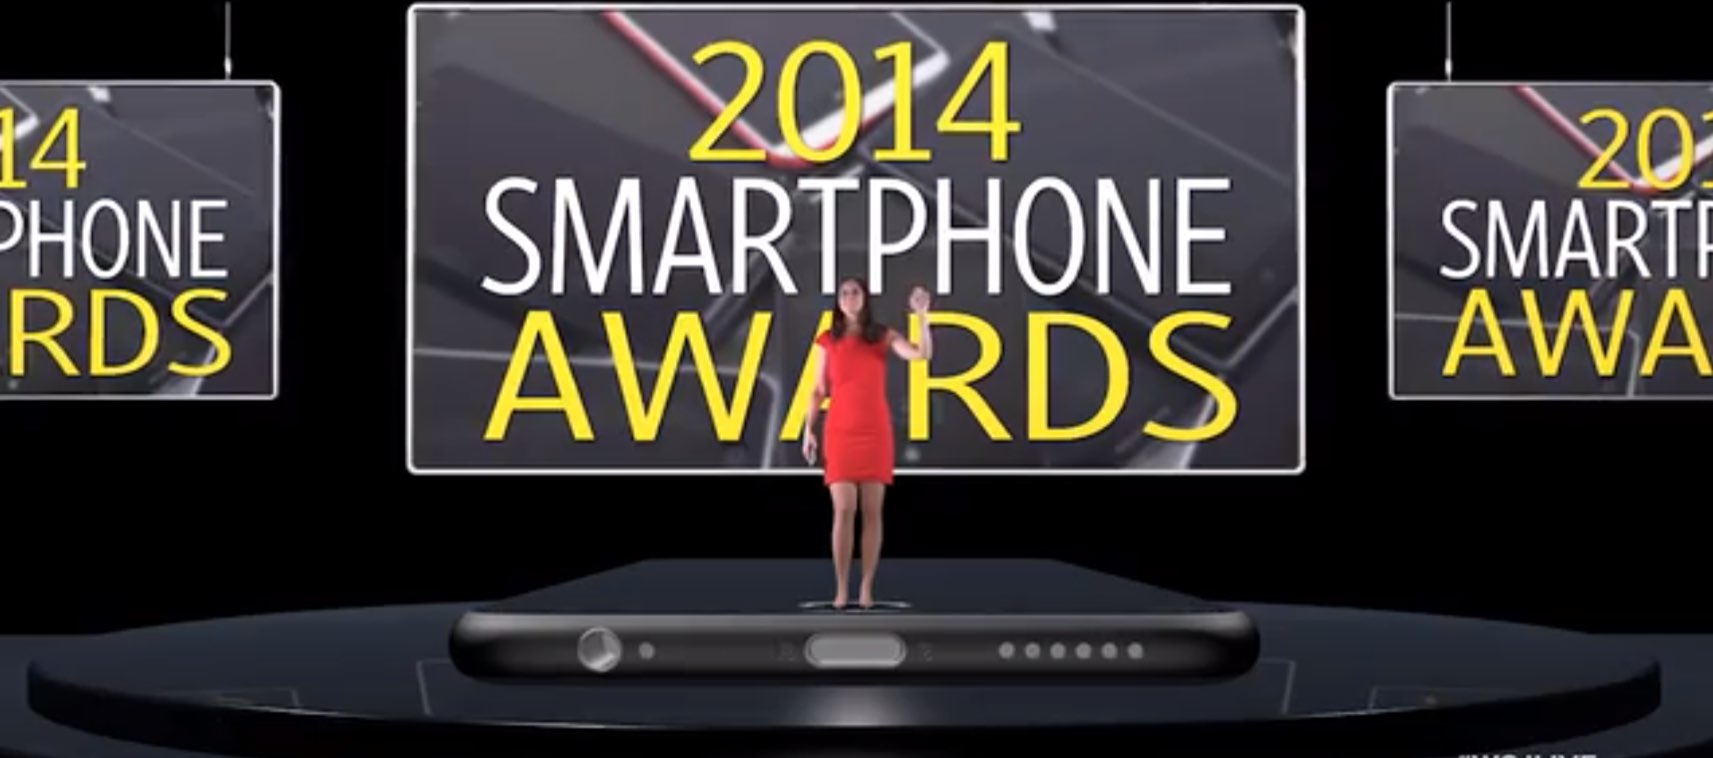 WSJ: iPhone 6 & iPhone 6 Plus BESTE SMARTPHONES 2014! 2